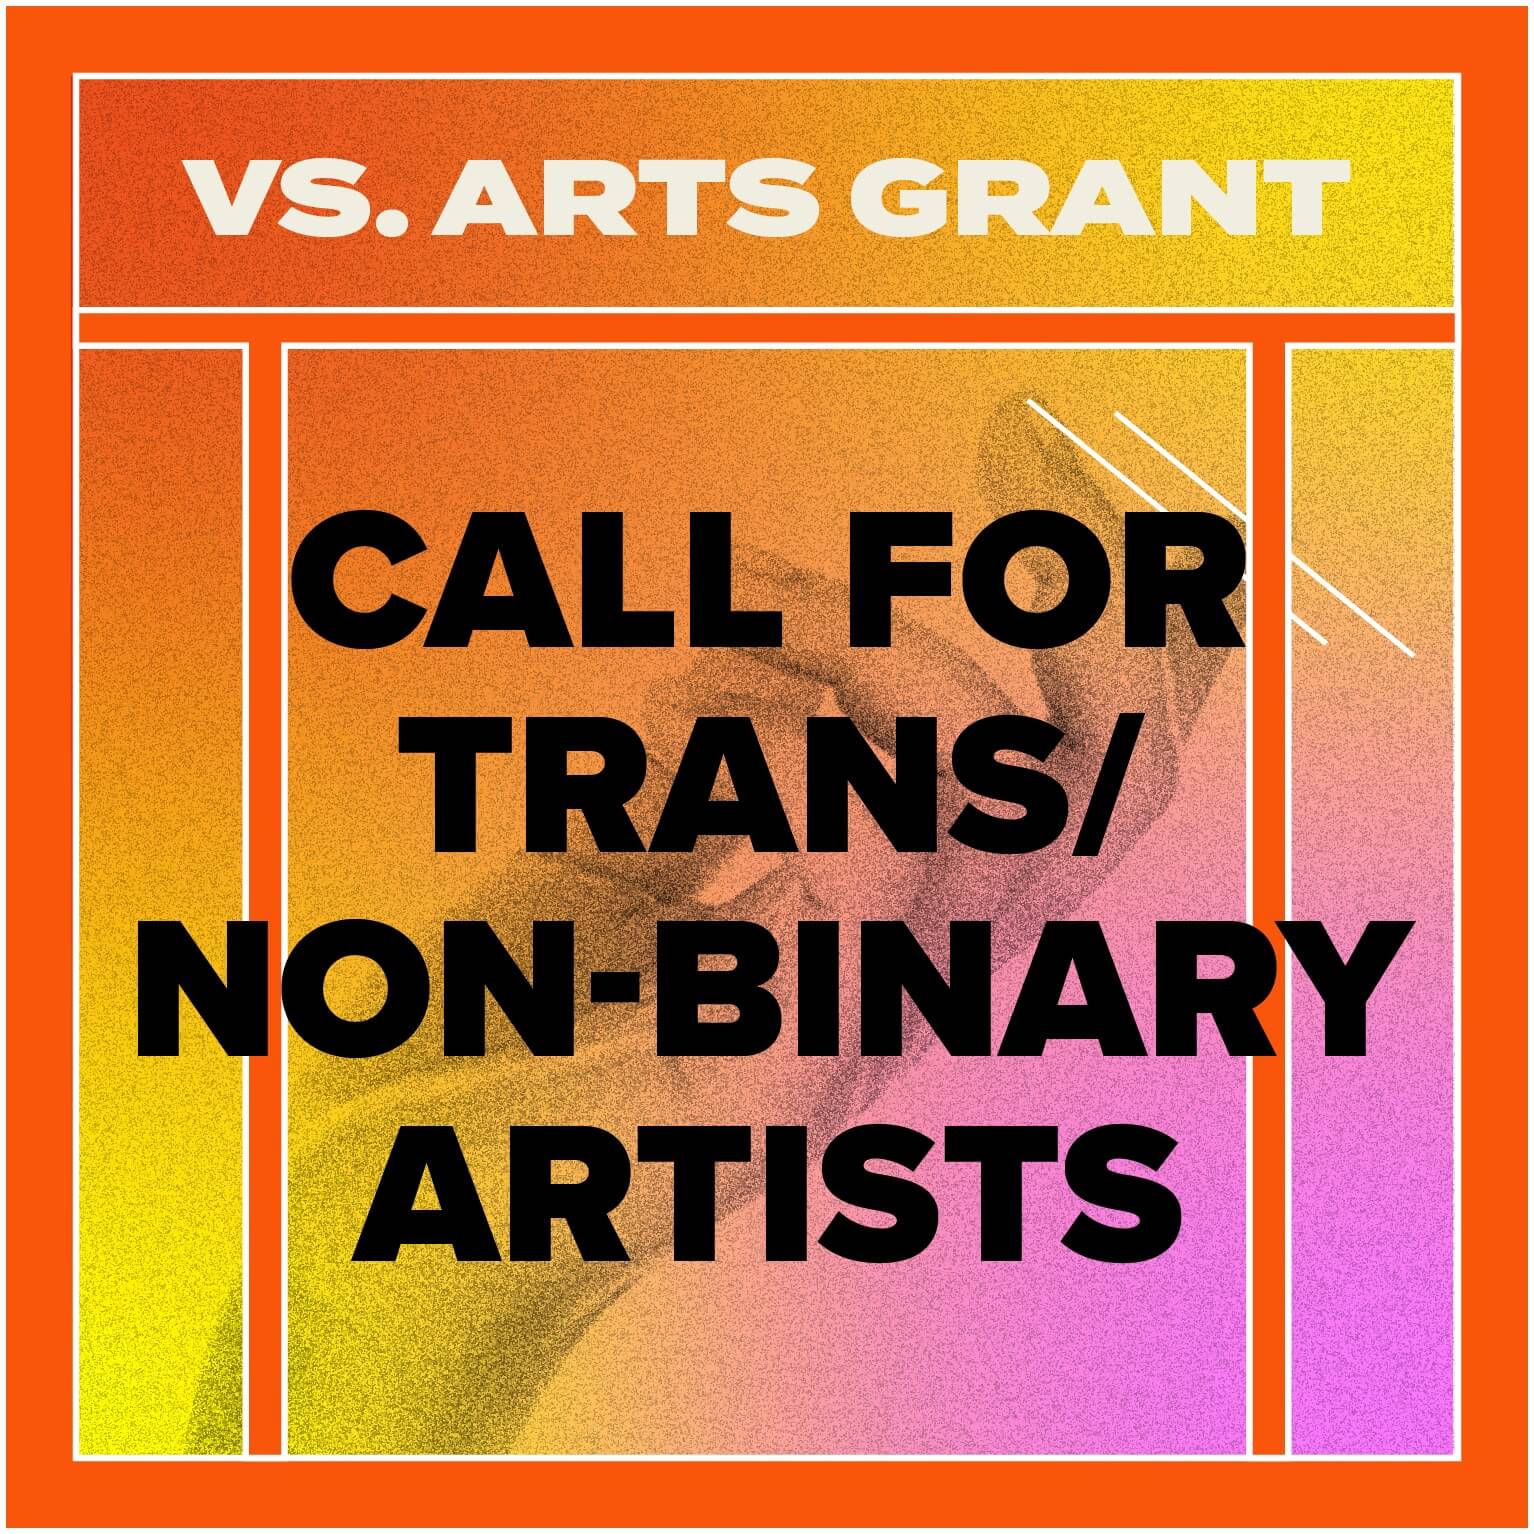 VS. Arts Grant: Call for trans/non-binary artists